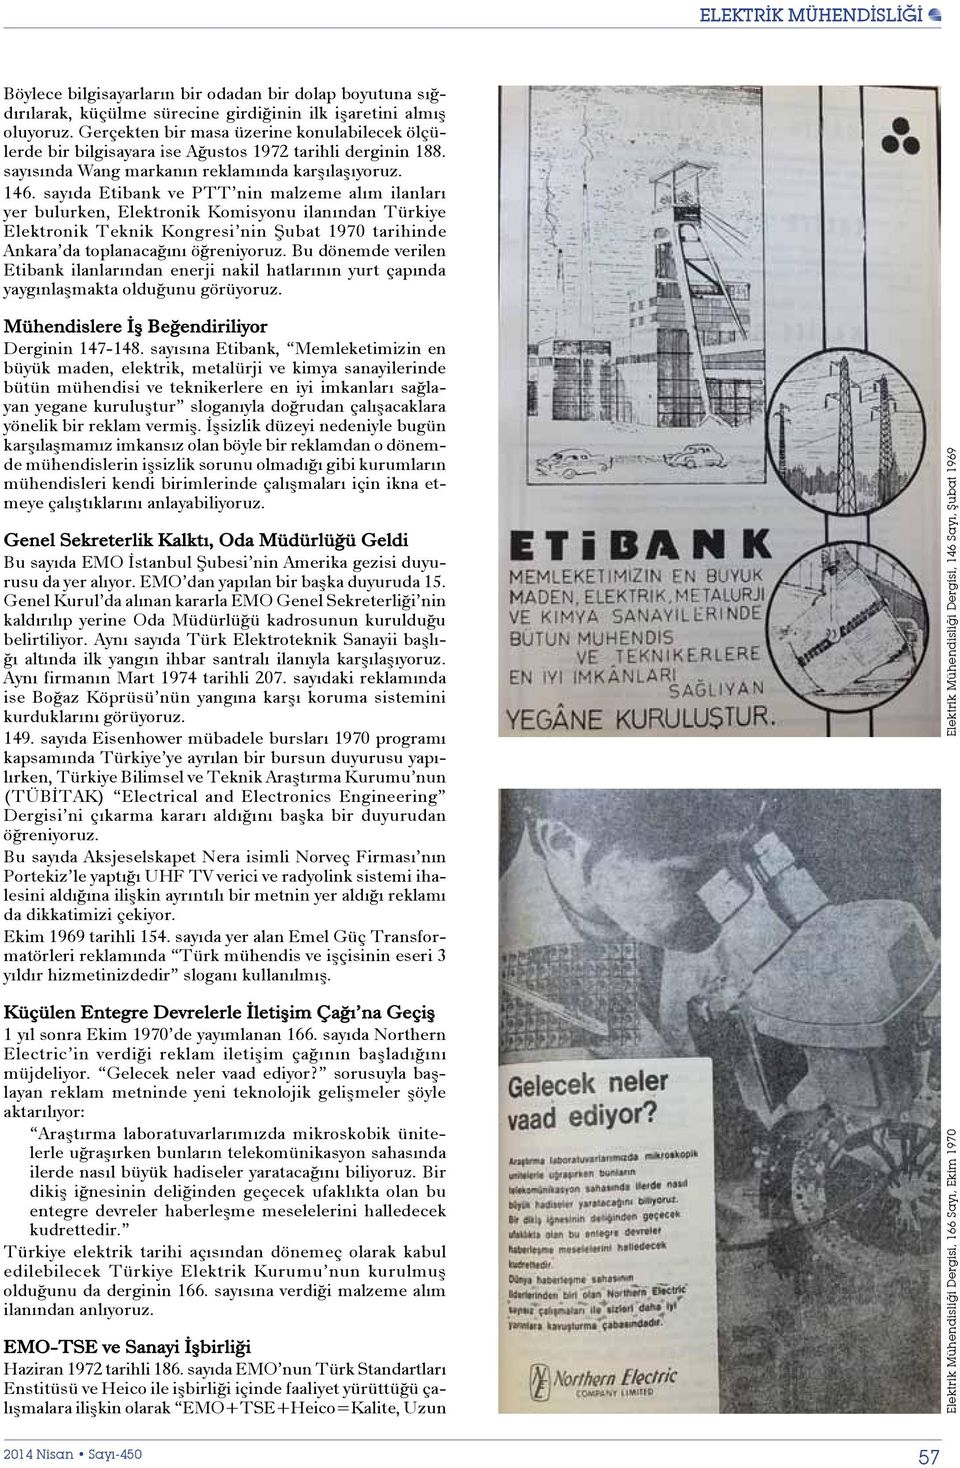 sayıda Etibank ve PTT nin malzeme alım ilanları yer bulurken, Elektronik Komisyonu ilanından Türkiye Elektronik Teknik Kongresi nin Şubat 1970 tarihinde Ankara da toplanacağını öğreniyoruz.